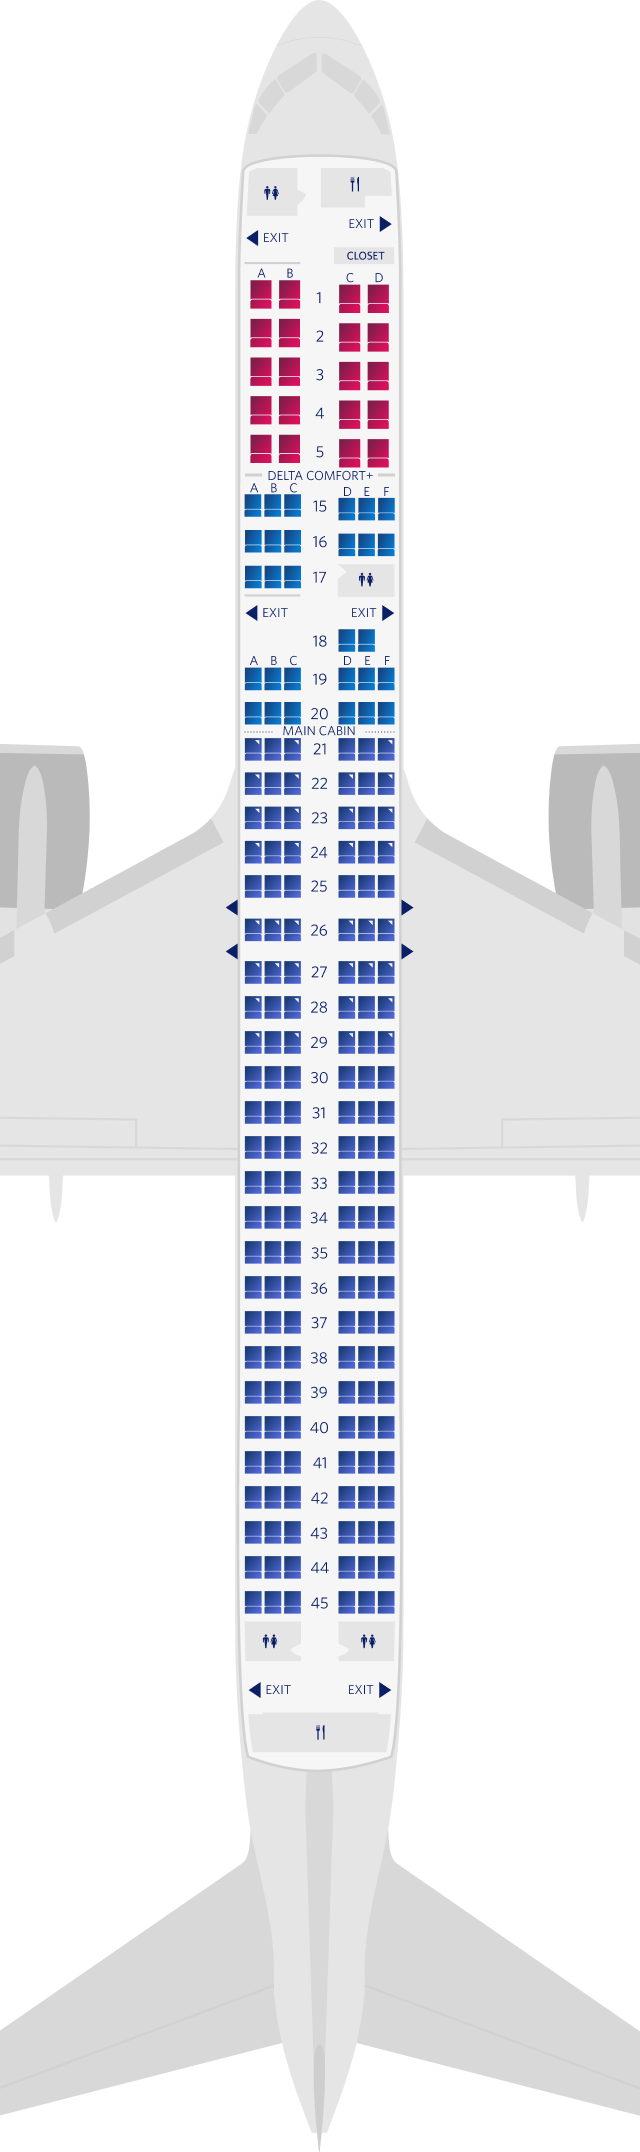 ボーイング757-200-75H型機シートマップ